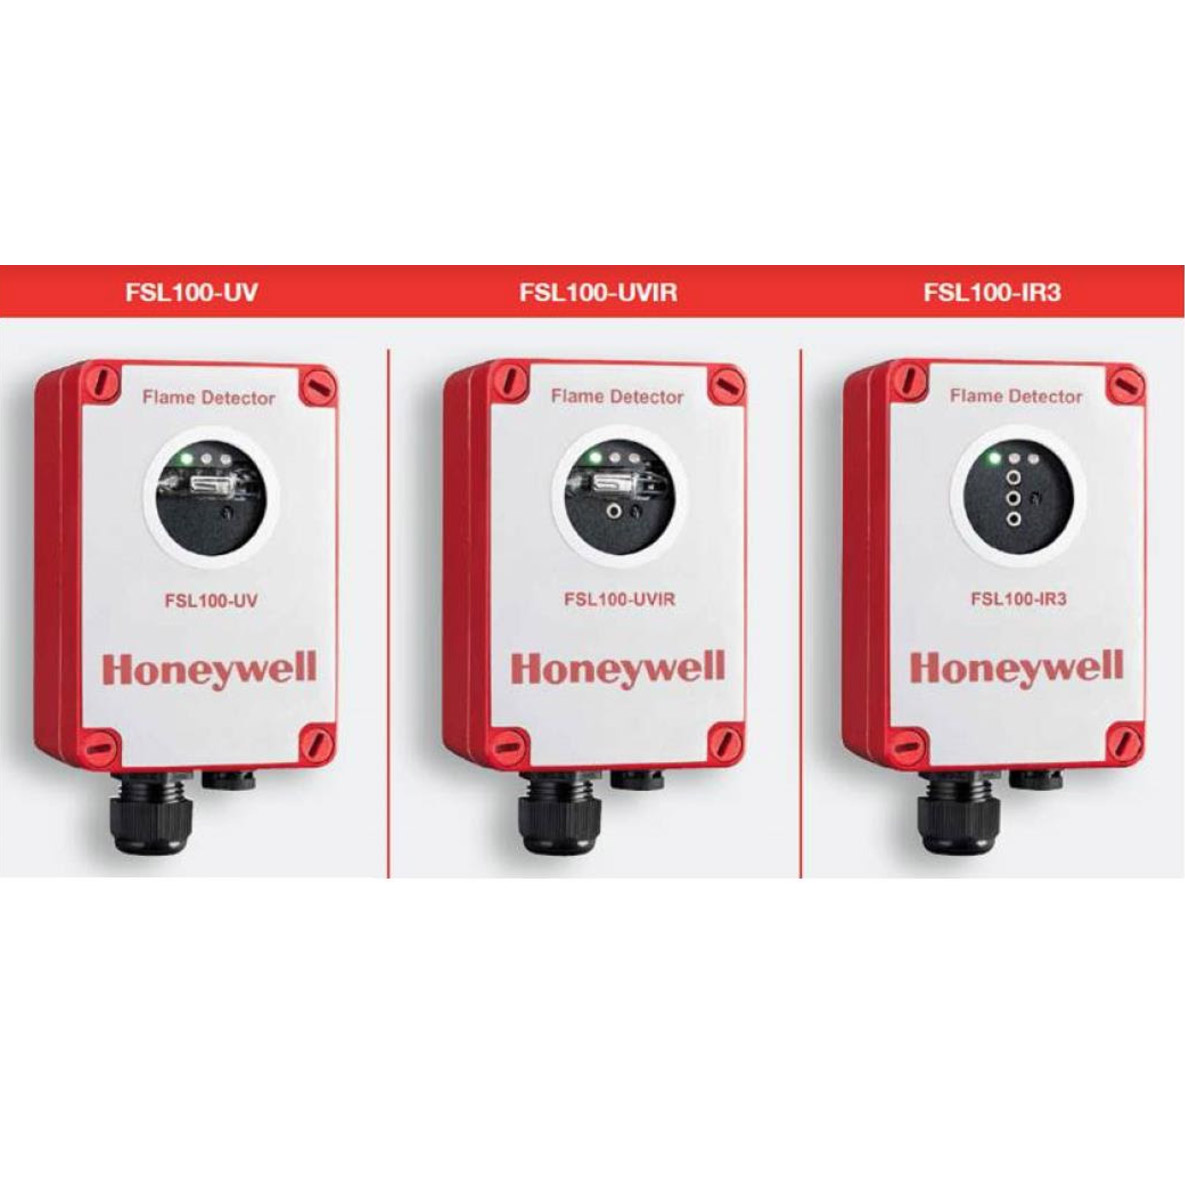 FSL100 Honeywell | Detectores de llama para entornos difíciles (UV, UV / IR e IR3)